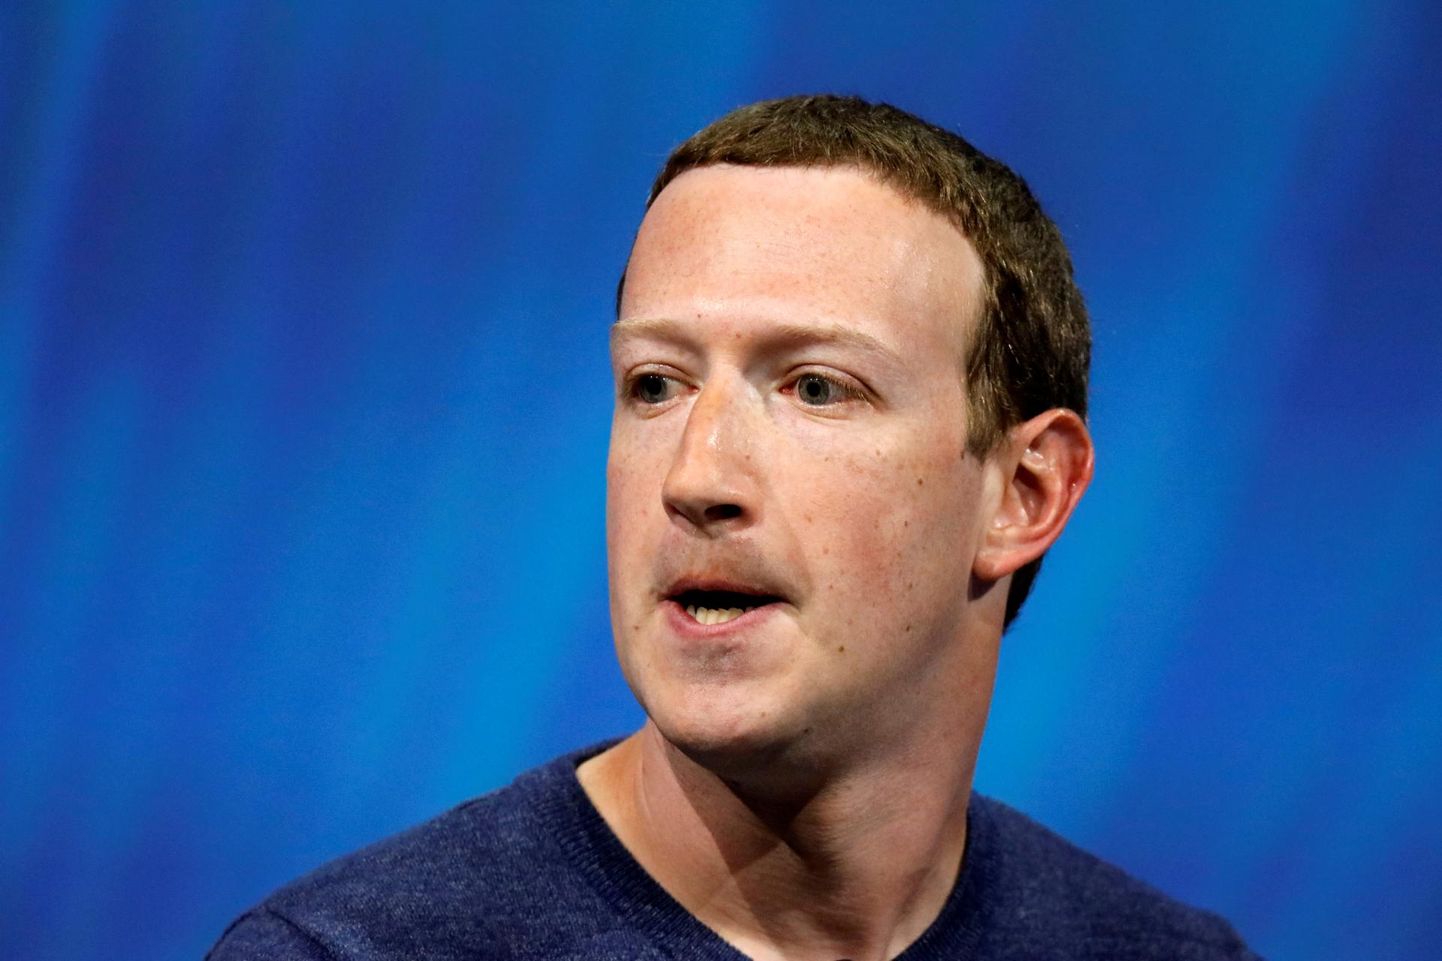 Facebooki asutaja ja juht Mark Zuckerberg jäi just 16,8 miljardi dollari võrra vaesemaks.<br />
FOTO: Charles Platiau/reuters/scanpix